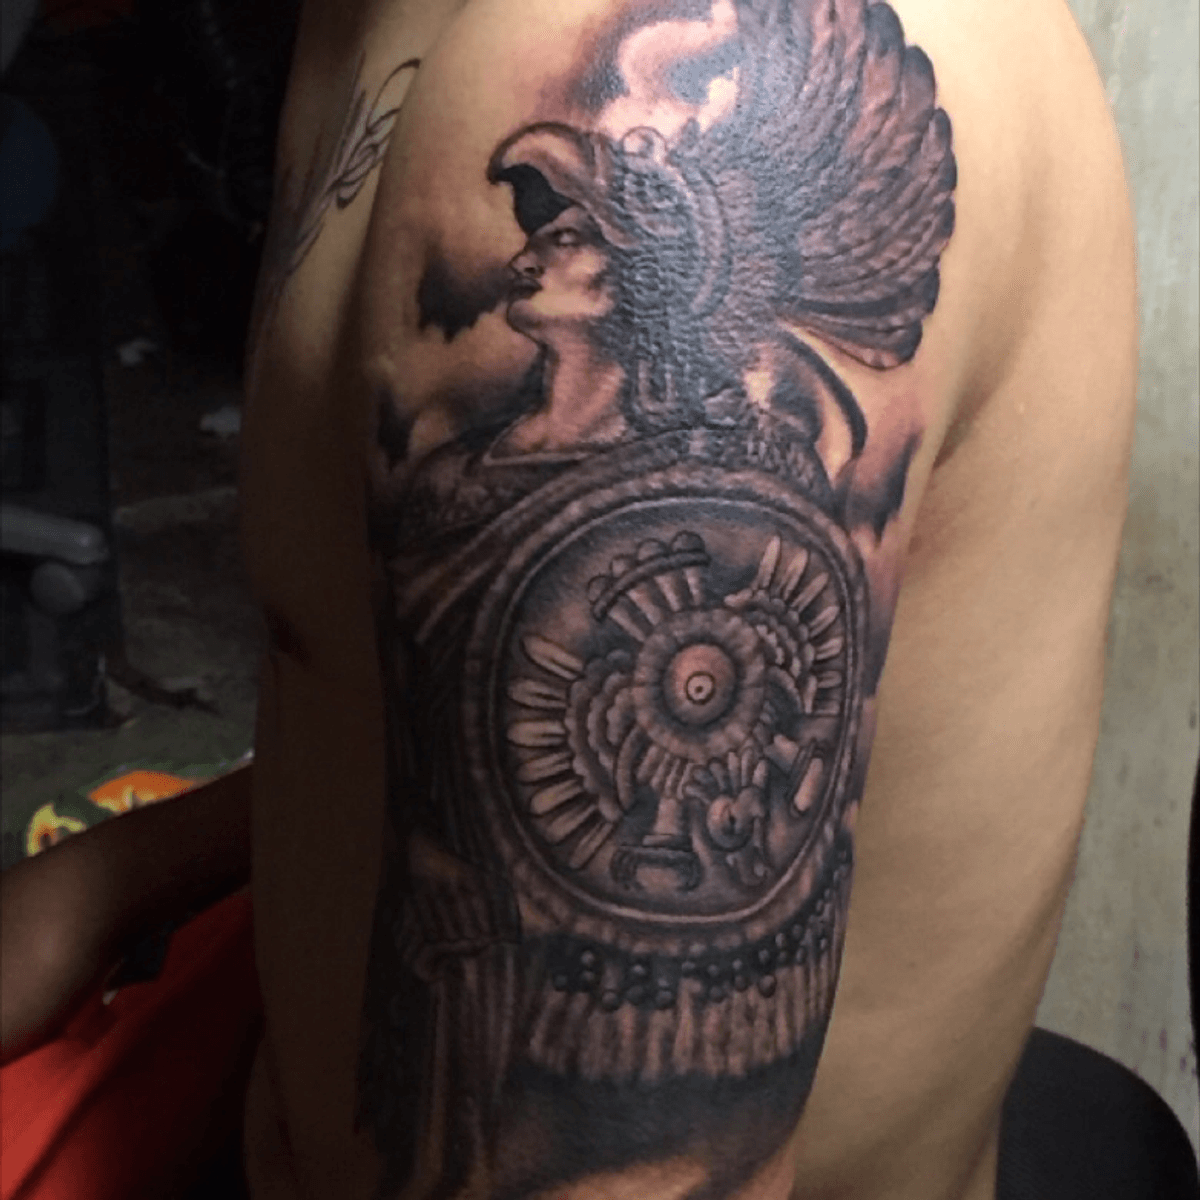 Tattoo uploaded by Ruben Ipiña • Guerrero azteca (aguila) • Tattoodo